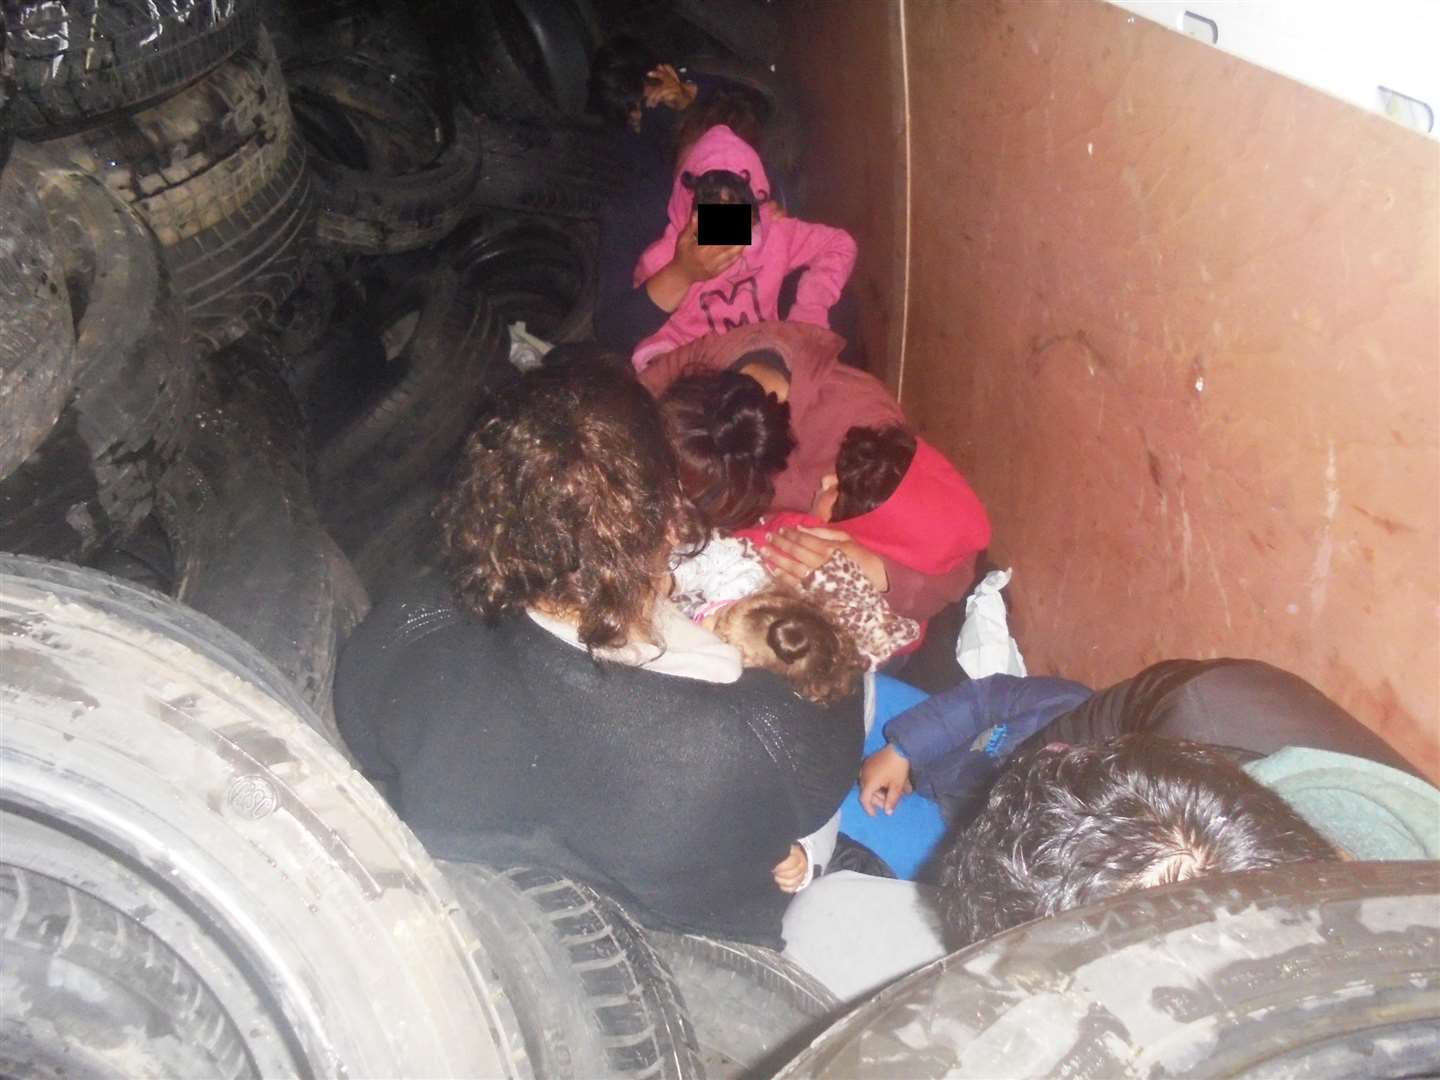 The migrants in the van (2694079)